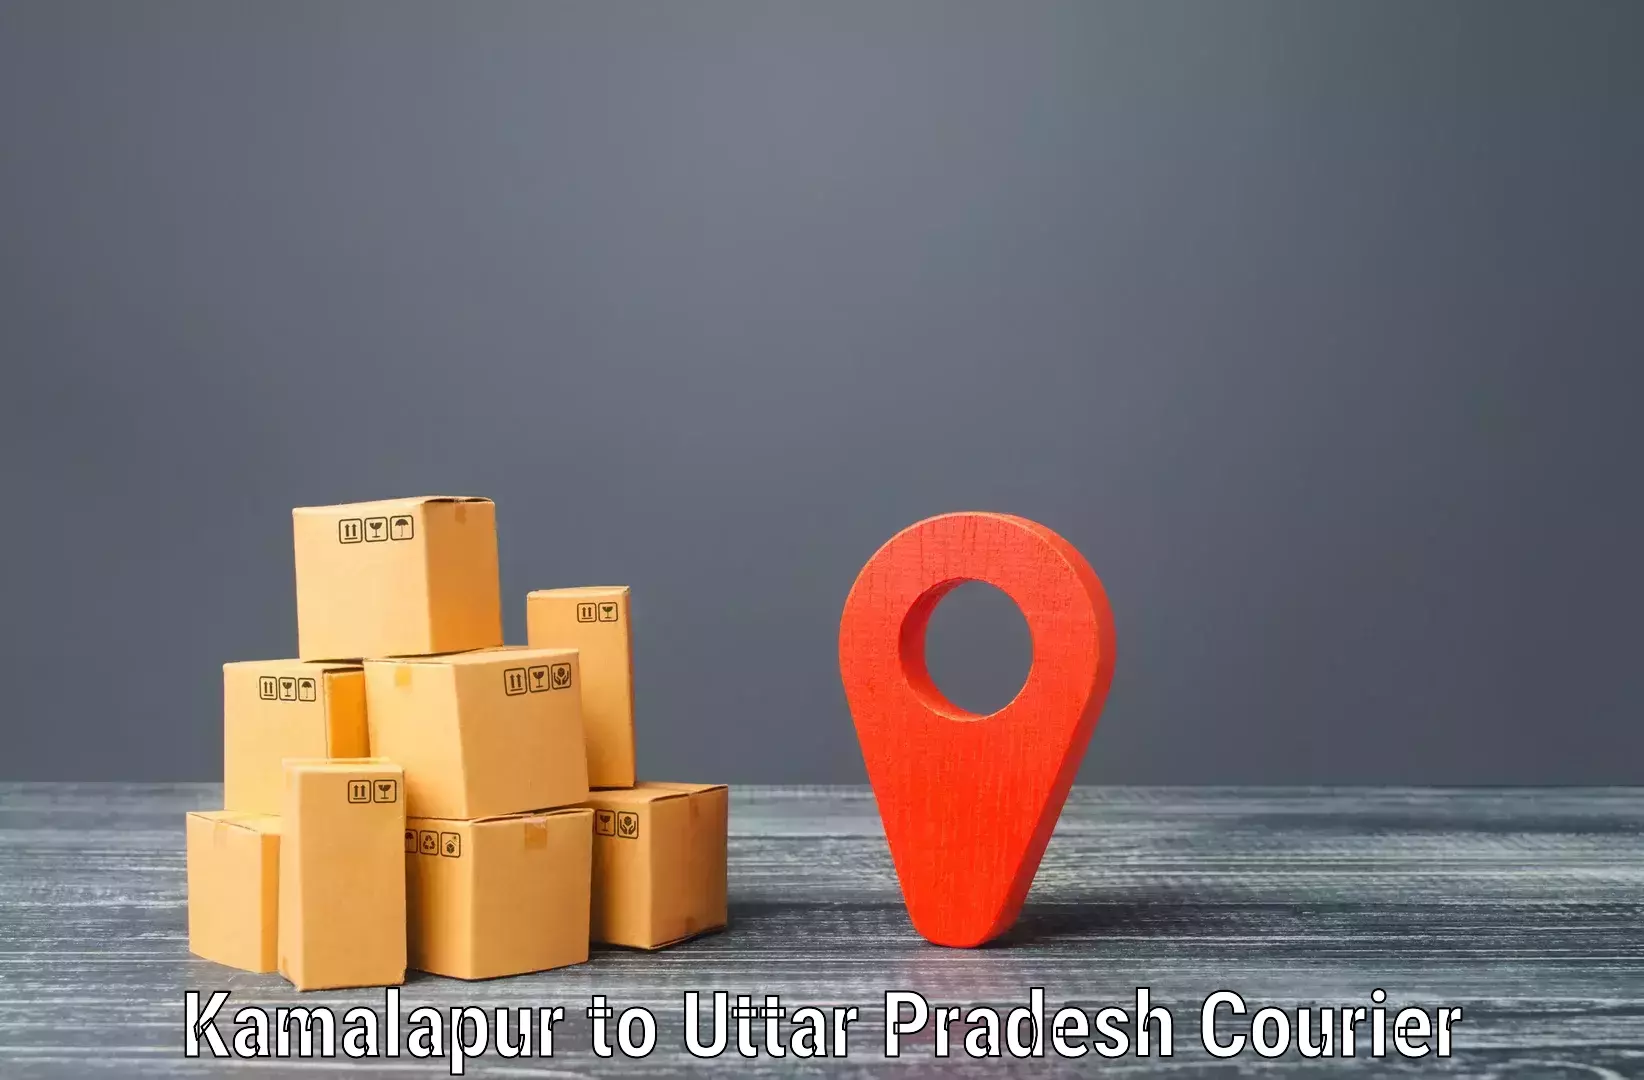 Efficient parcel service Kamalapur to Chopan